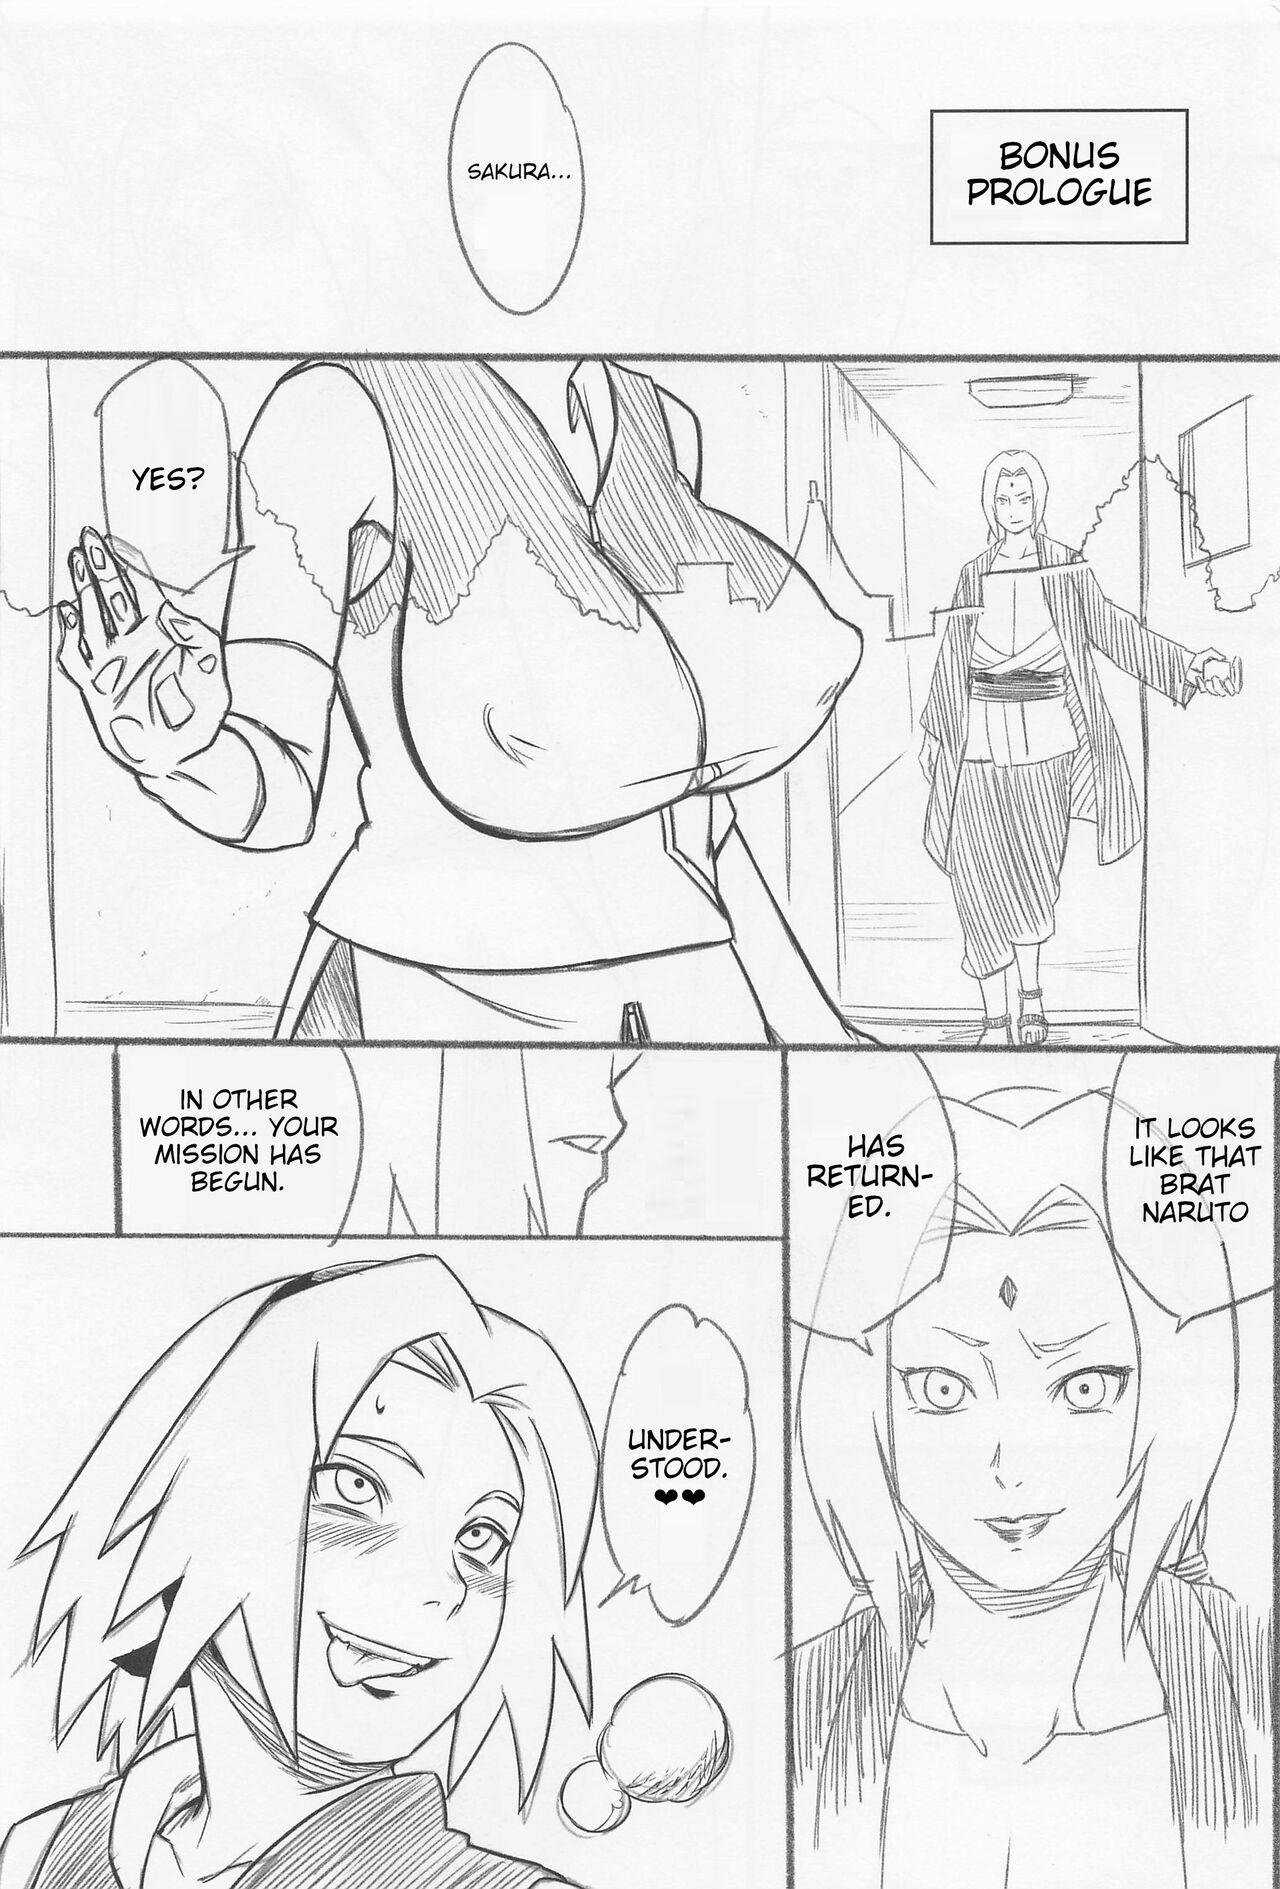 Trap Hyakugo no Jutsu - Naruto Nalgona - Page 2